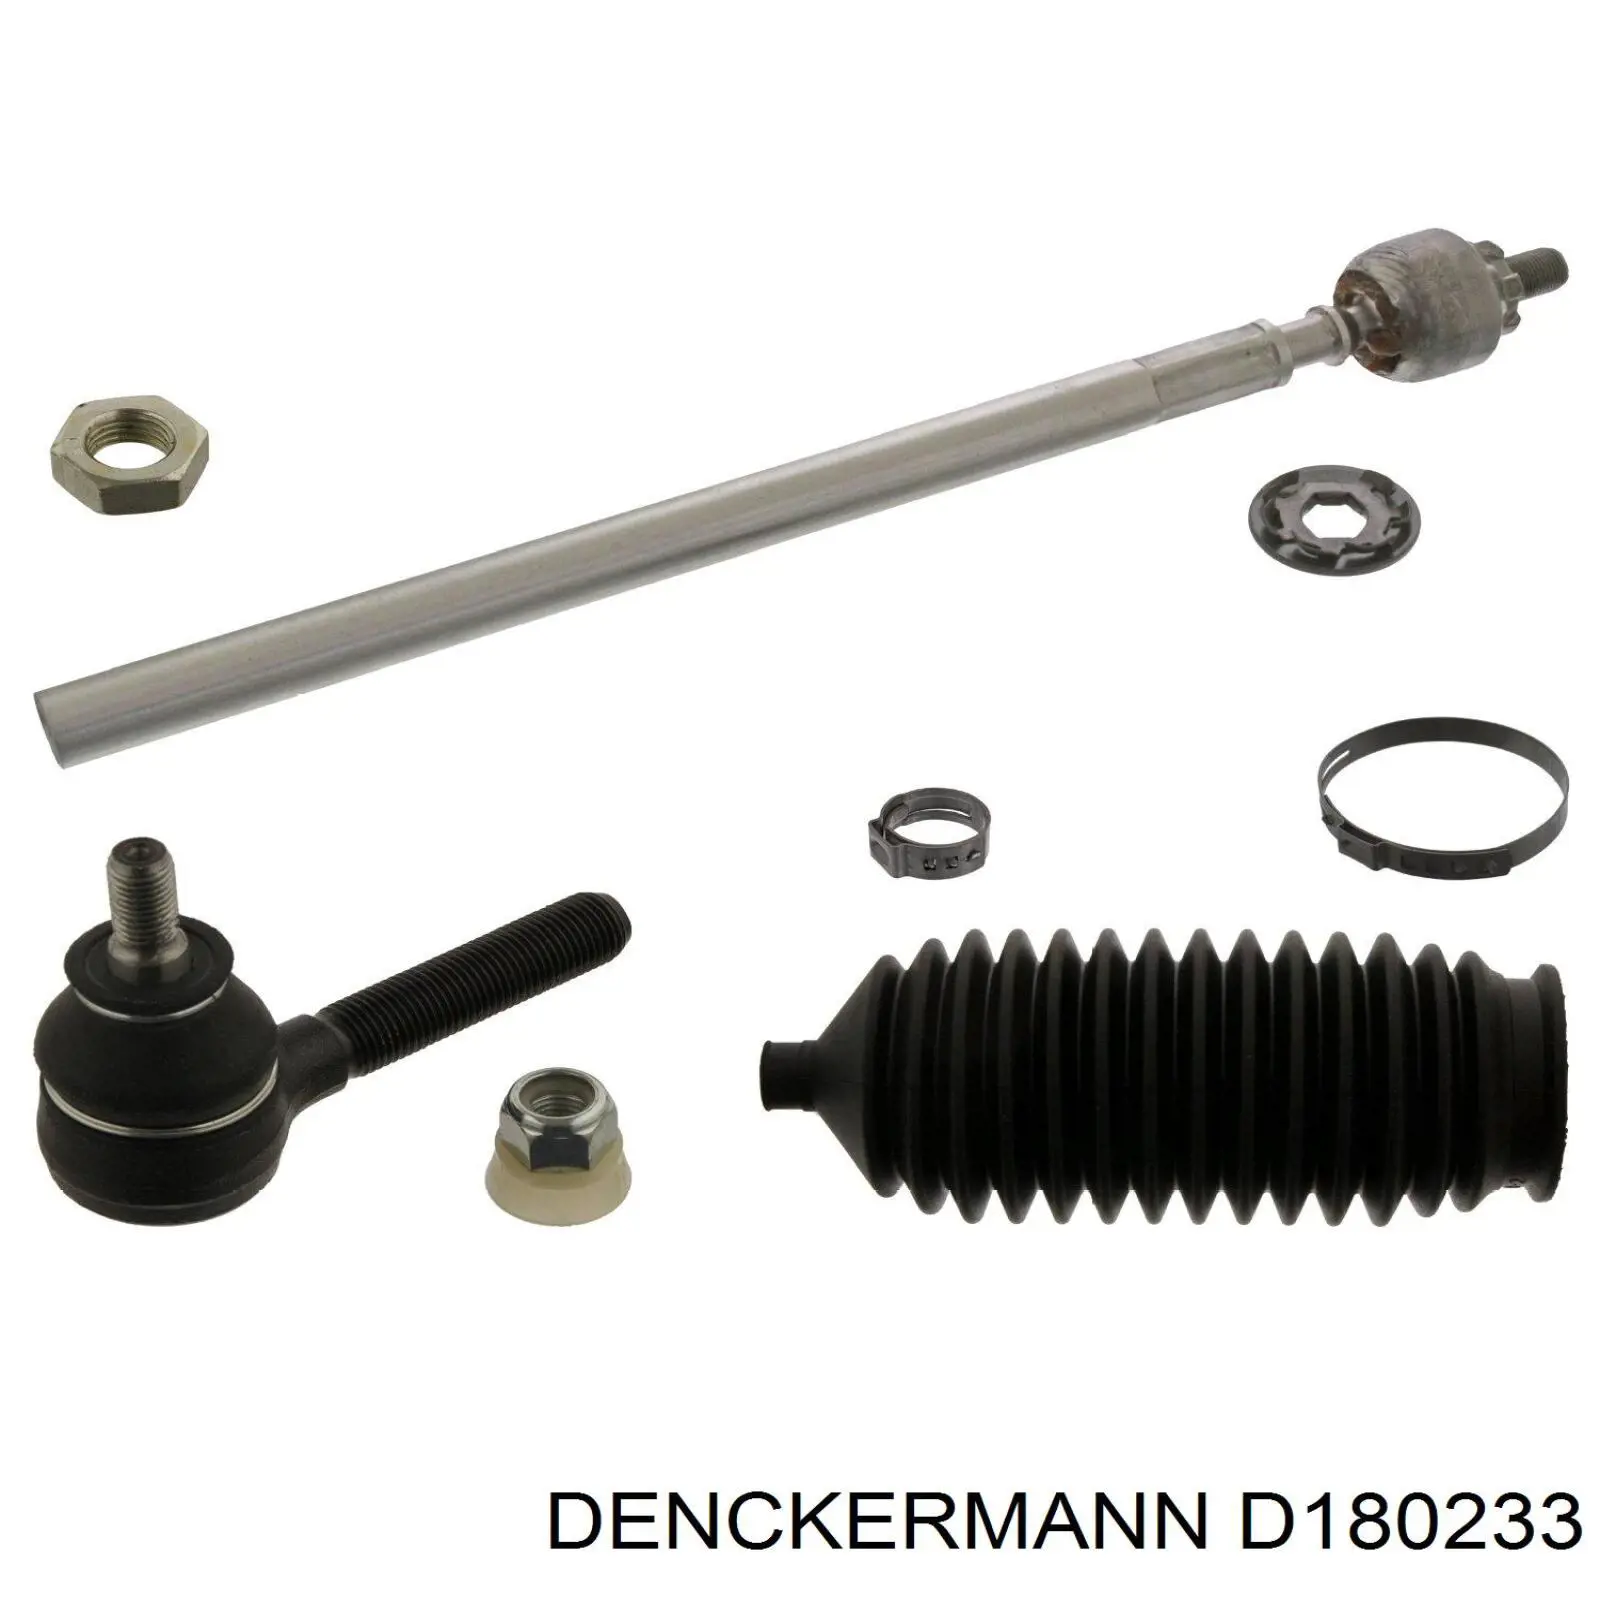 D180233 Denckermann barra de acoplamiento